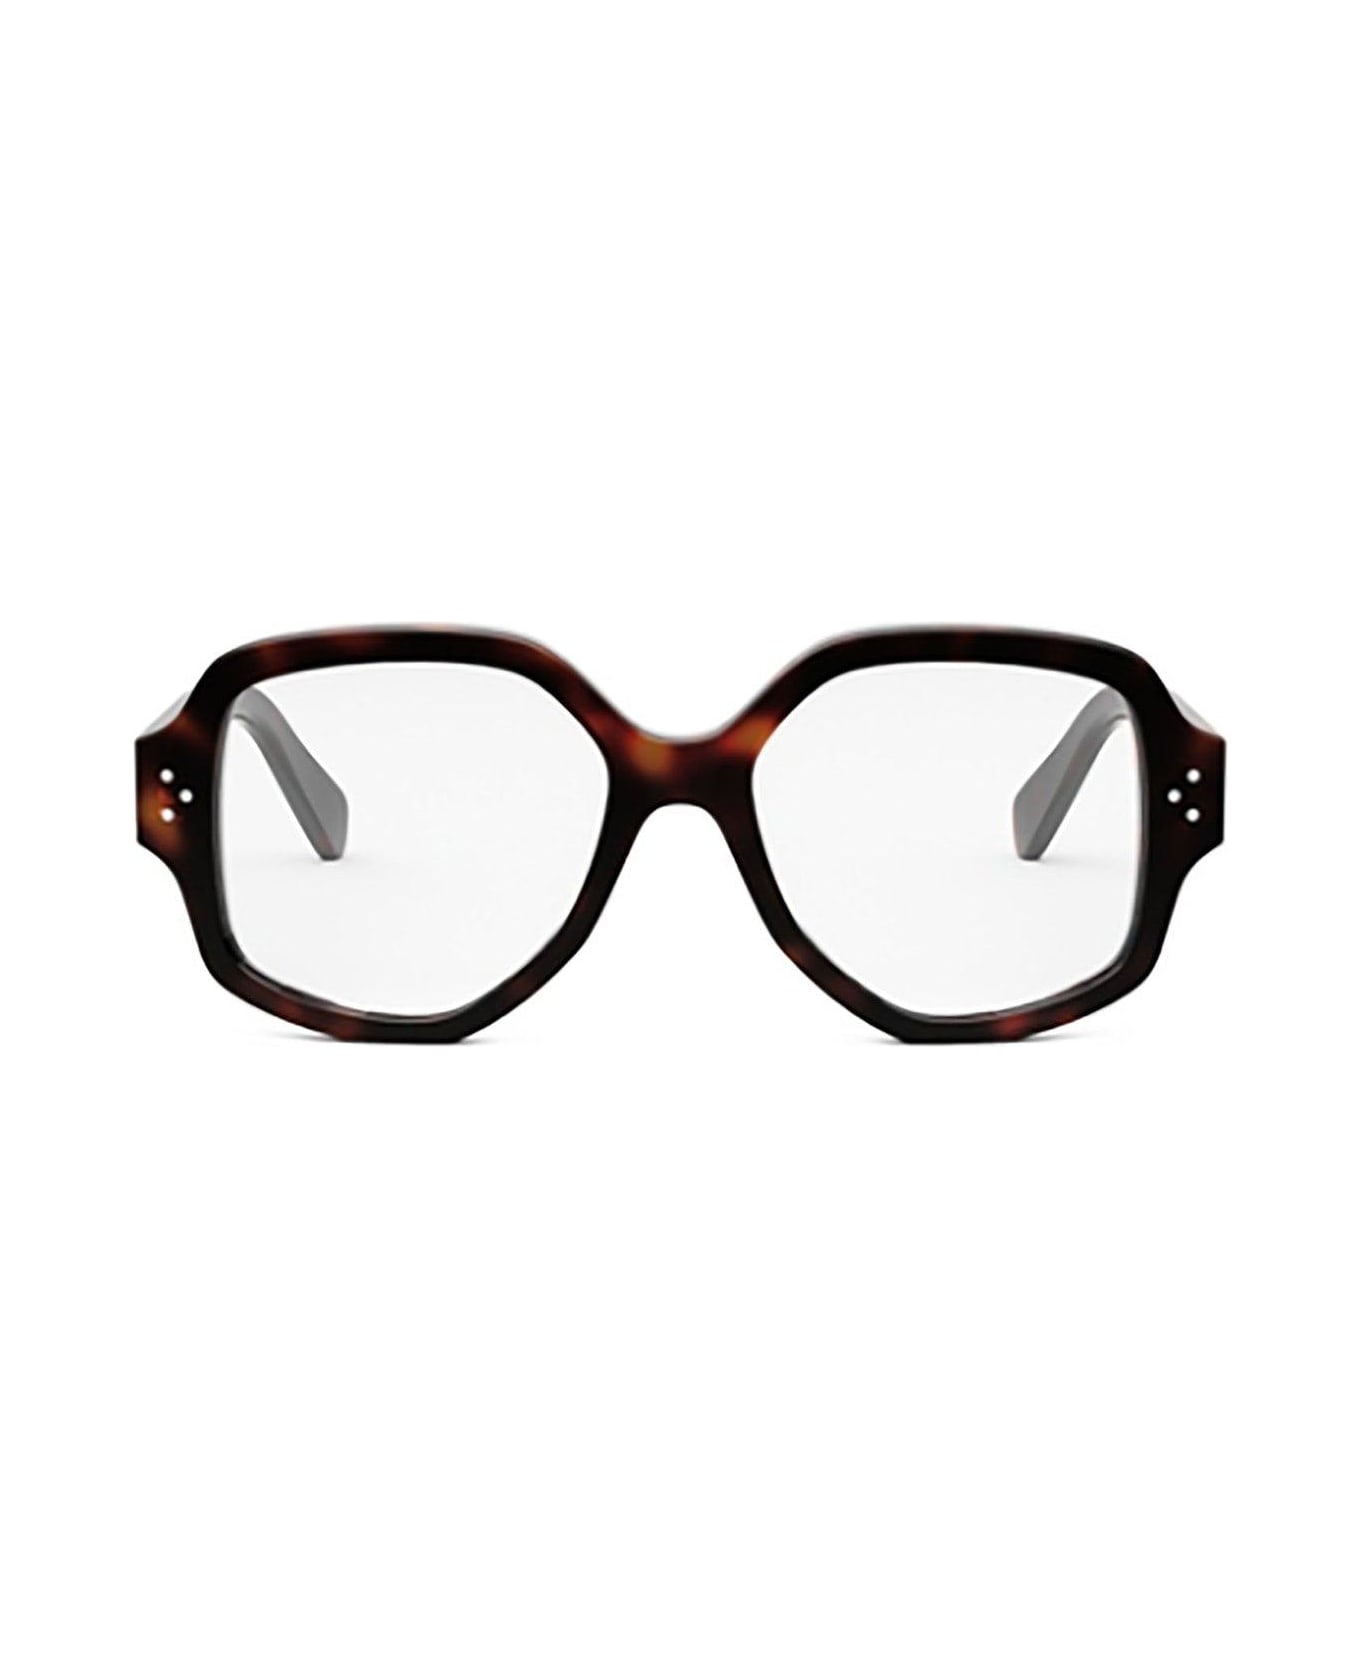 Celine Eyewear Squared Frame Glasses - 052 アイウェア